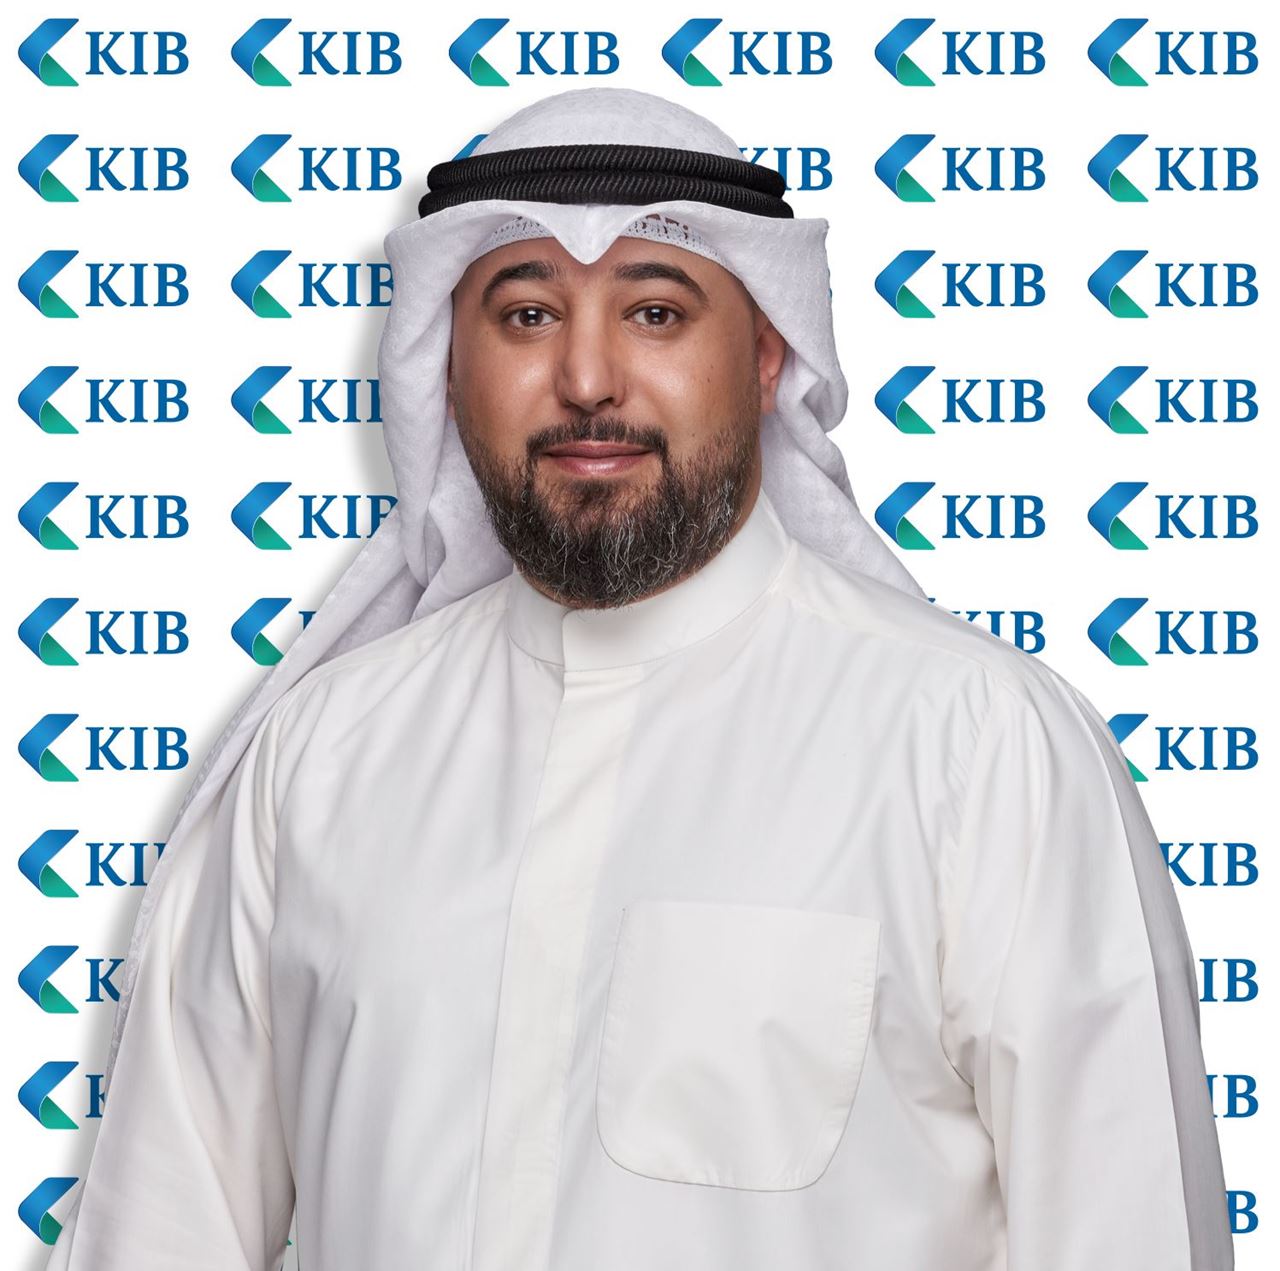 علي الحبابي - رئيس قسم بيع السيارات في KIB